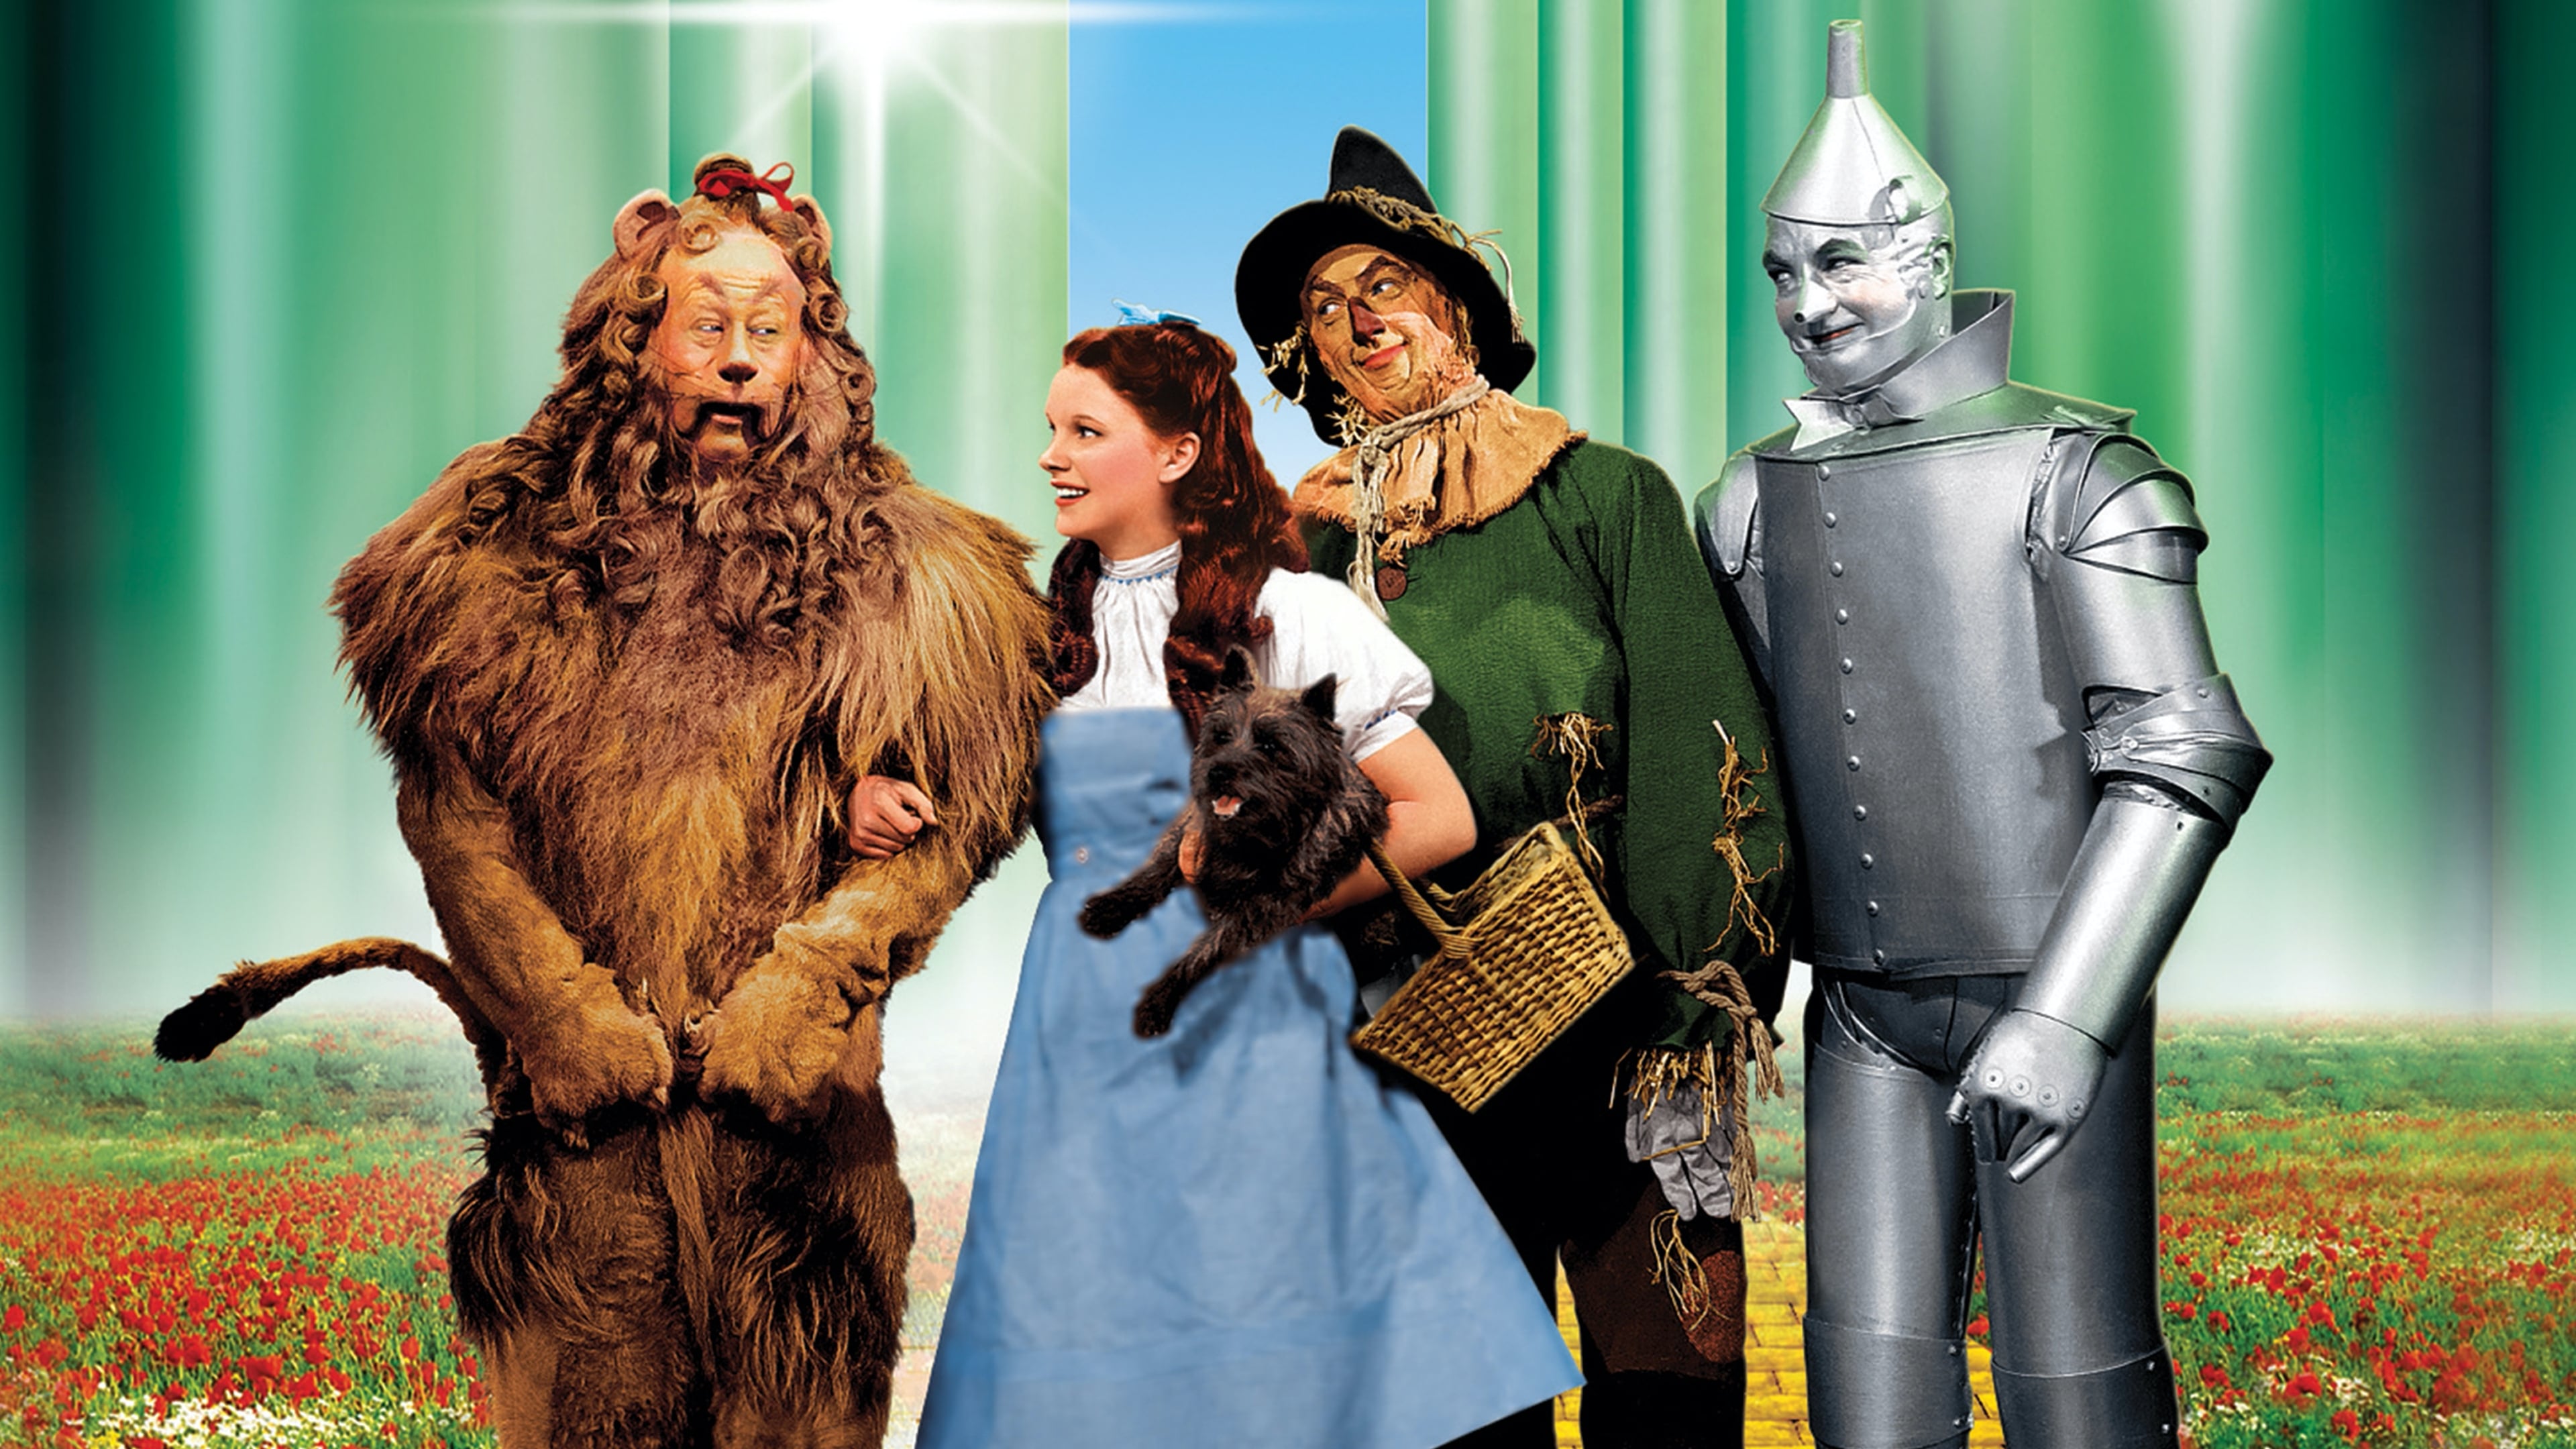 Đôi giày 3,5 triệu USD trong phim 'The Wizard of Oz' về với chủ sau 19 năm bị đánh cắp 3